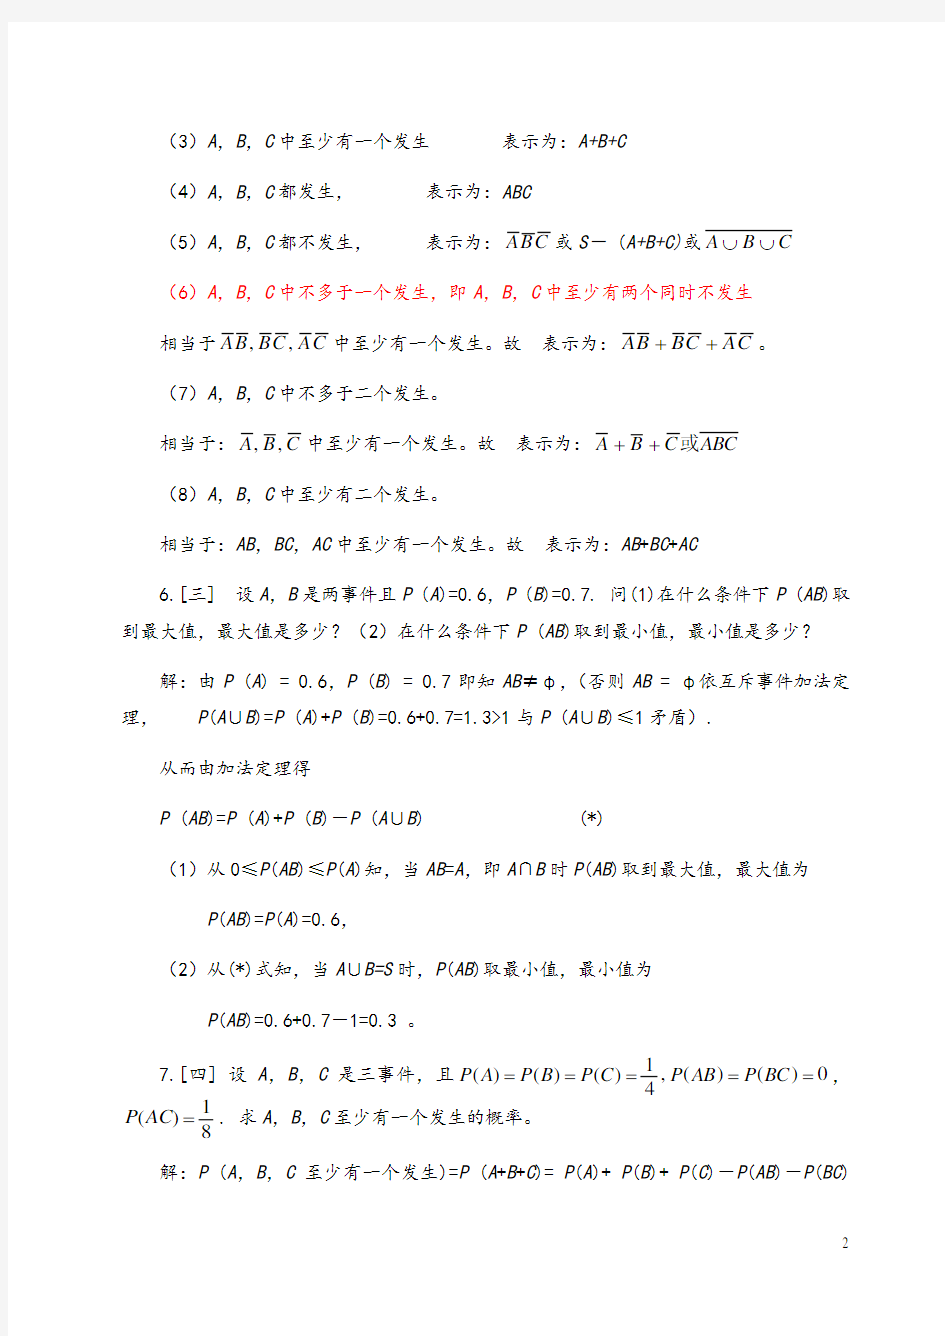 《概率论与数理统计》浙江大学第四版课后习题答案